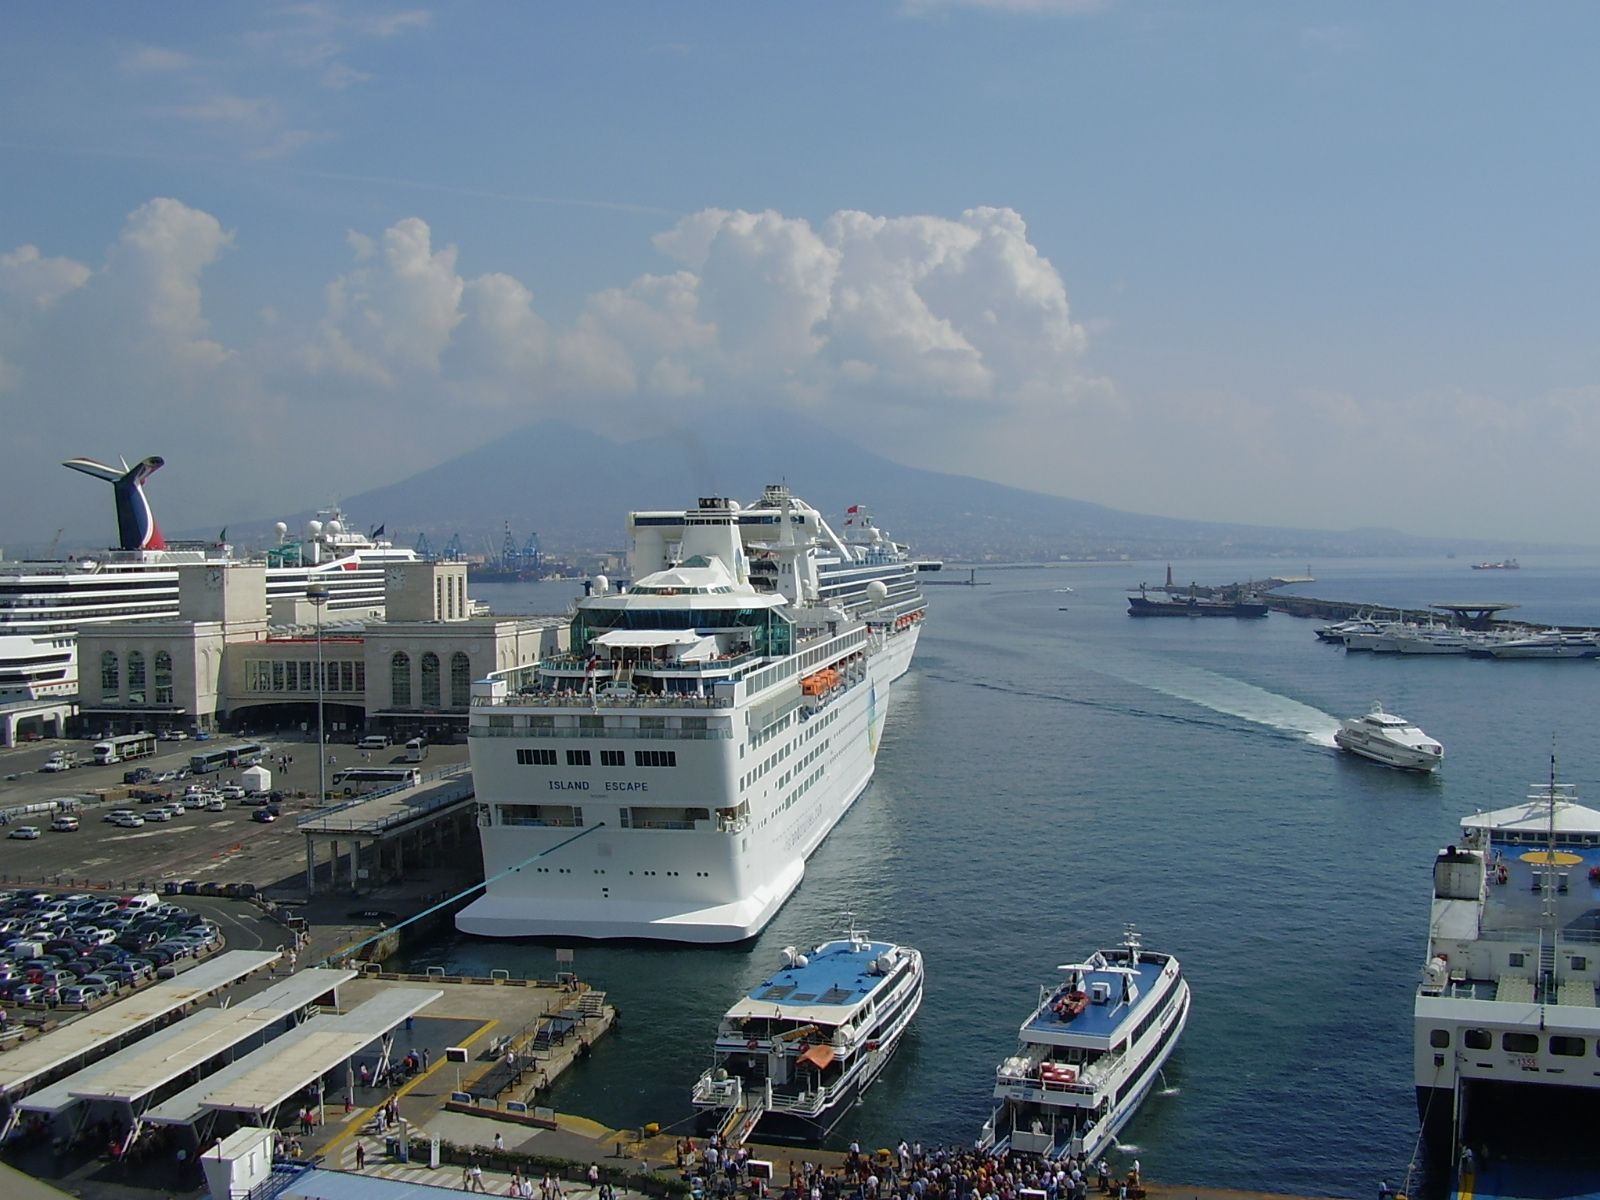 Porti Campania: pronto il piano accosti che elimina ressa sui moli